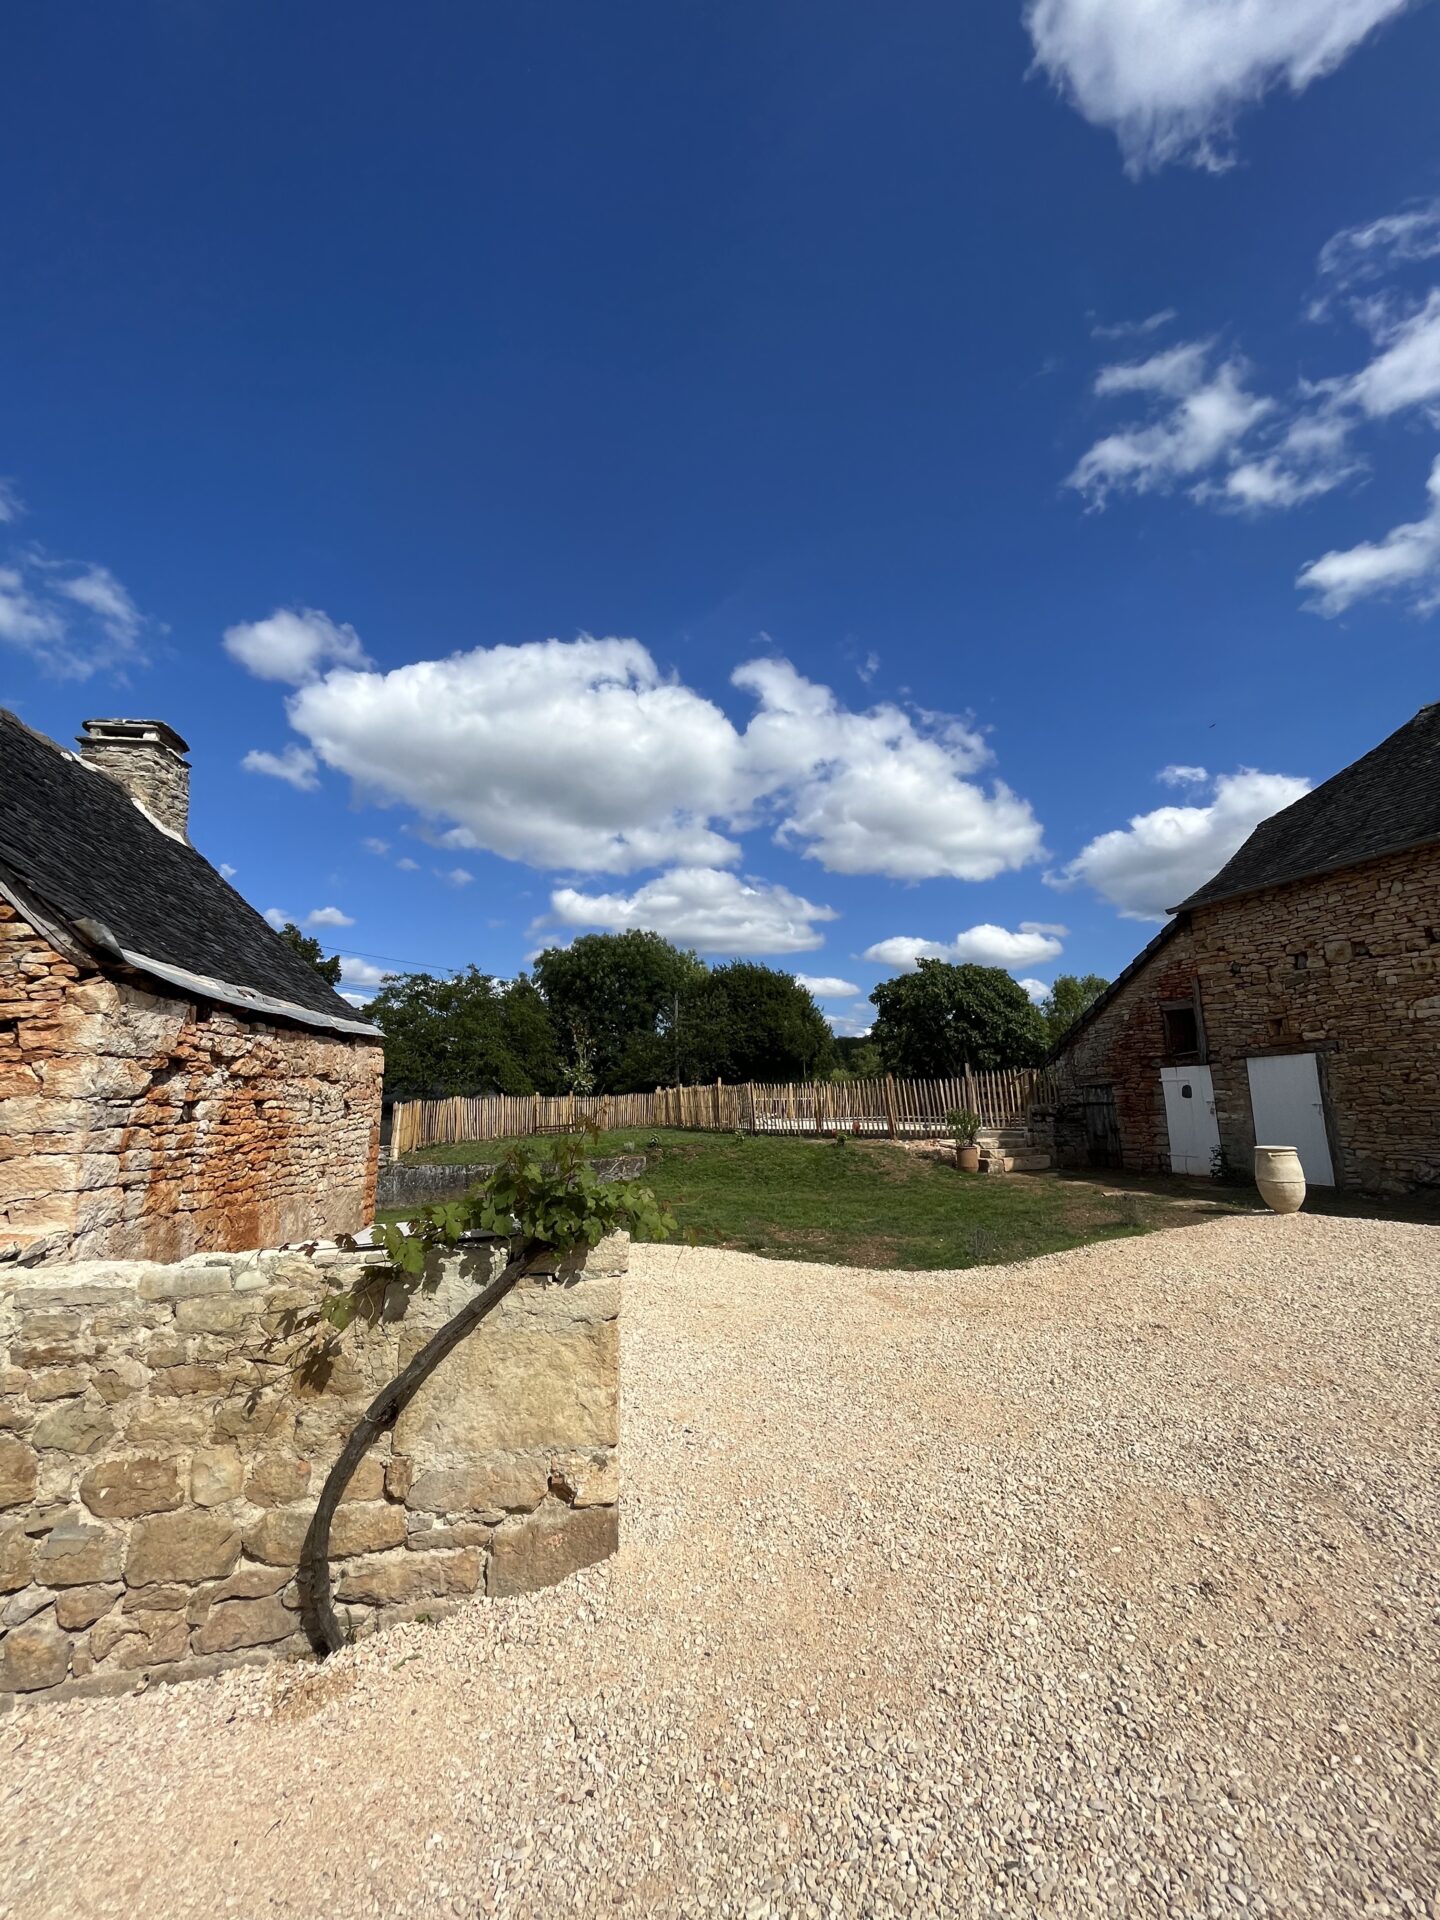 Cour du Clos Rosaly - Maison de Campagne disponible à la location - Vacances en Dordogne Périgord